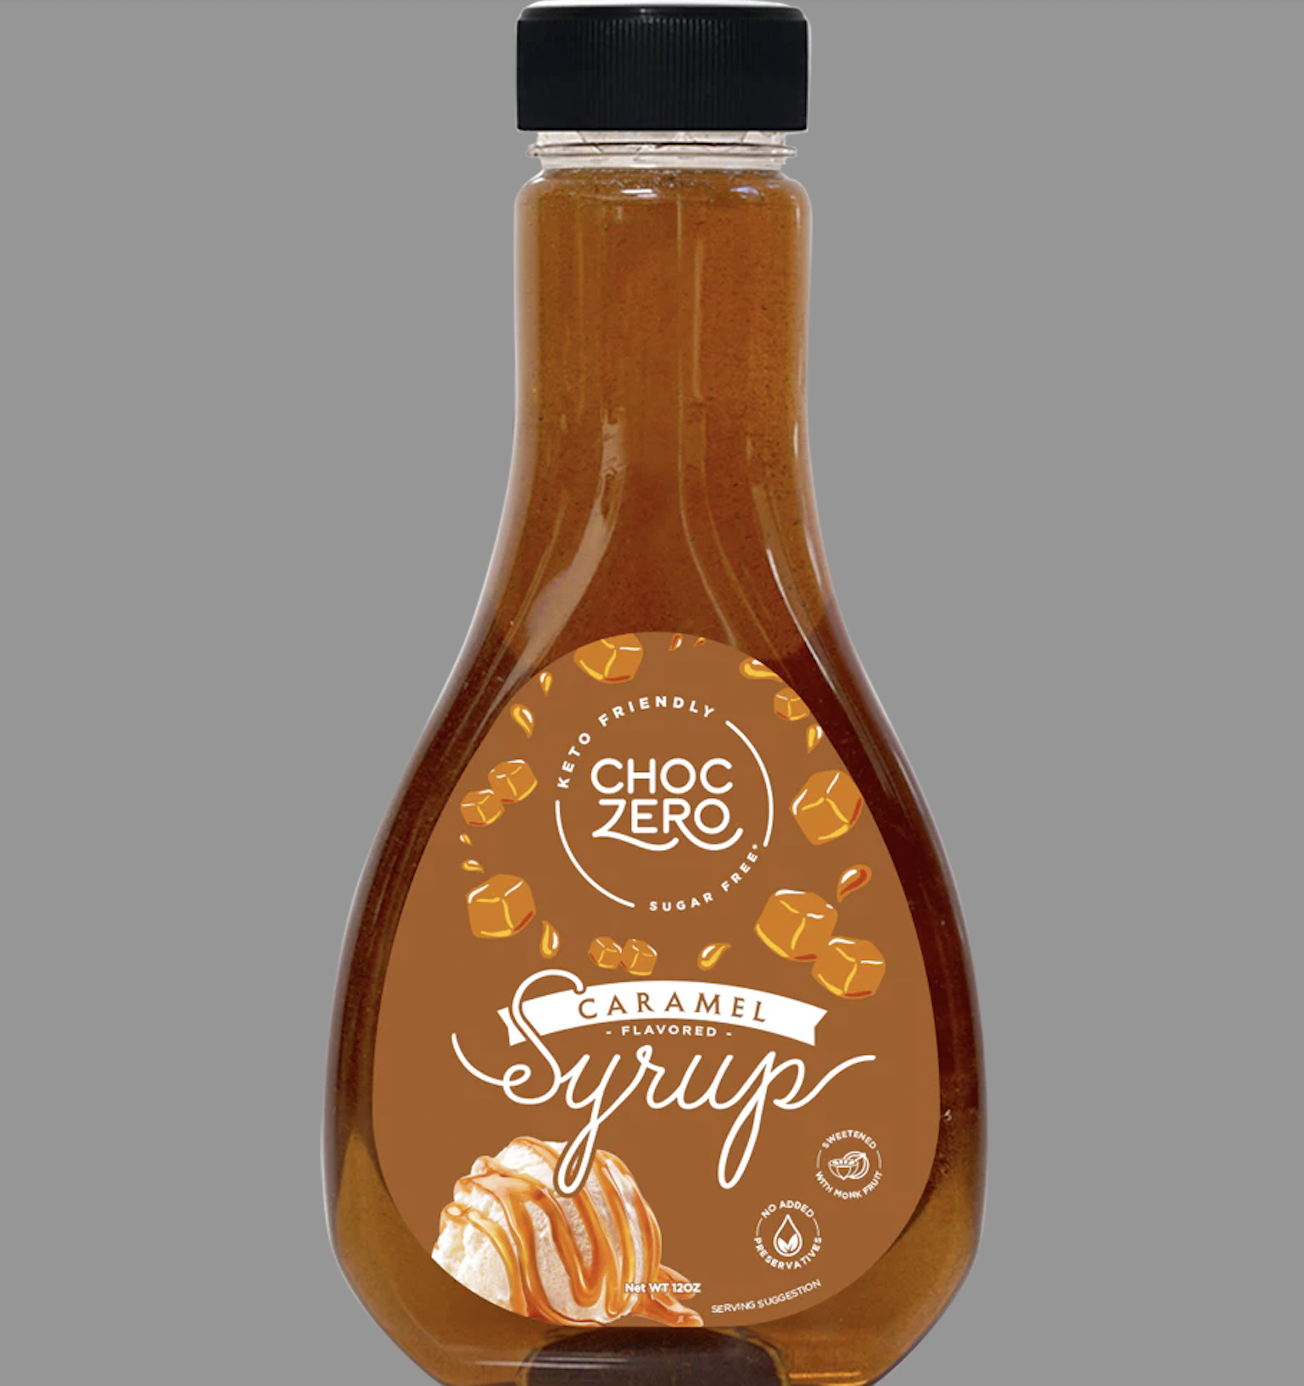 SỐT CARAMEL KHÔNG ĐƯỜNG - ĂN KIÊNG KETO Choczero Caramel Syrup, Sugar-Free